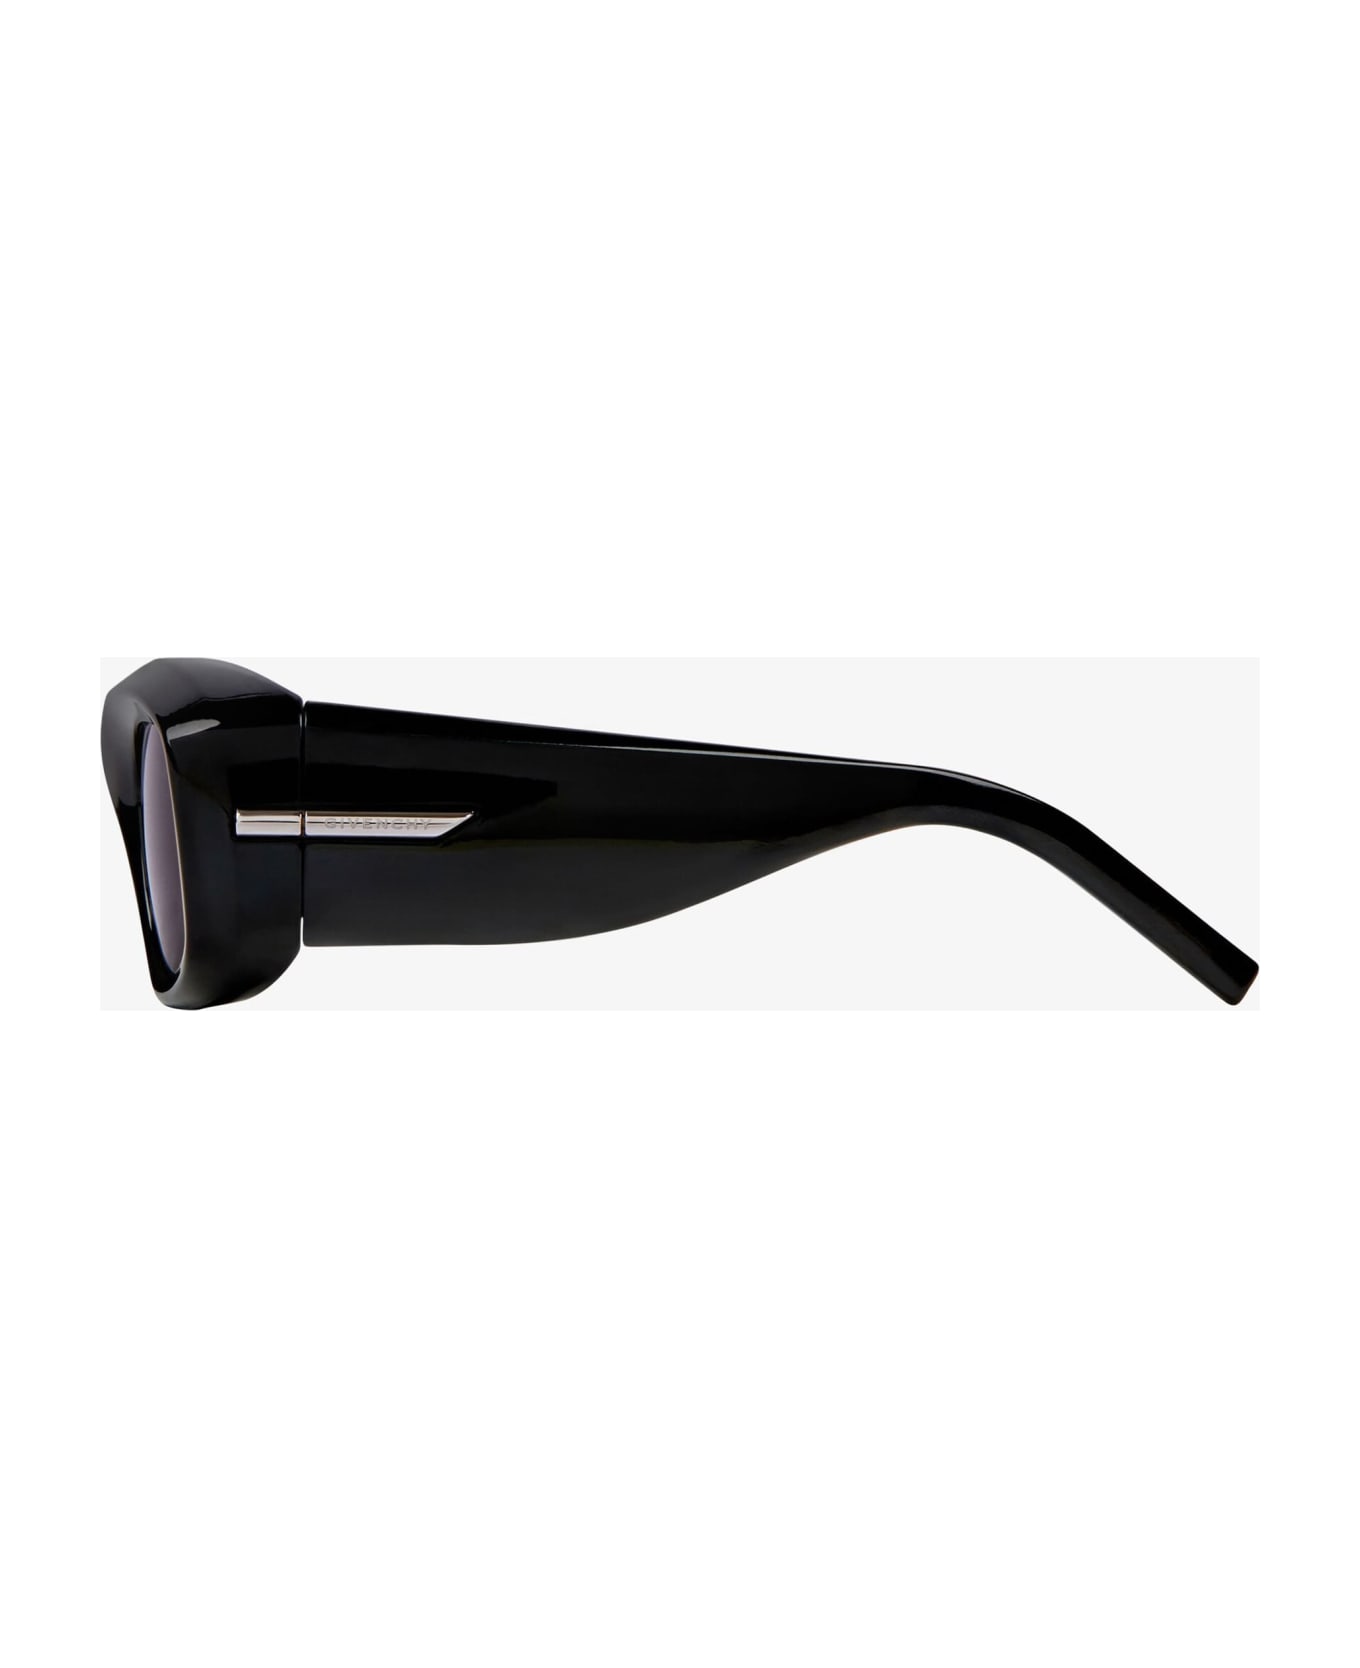 Givenchy Eyewear Gv40044u - Shiny Black Sunglasses - Black サングラス